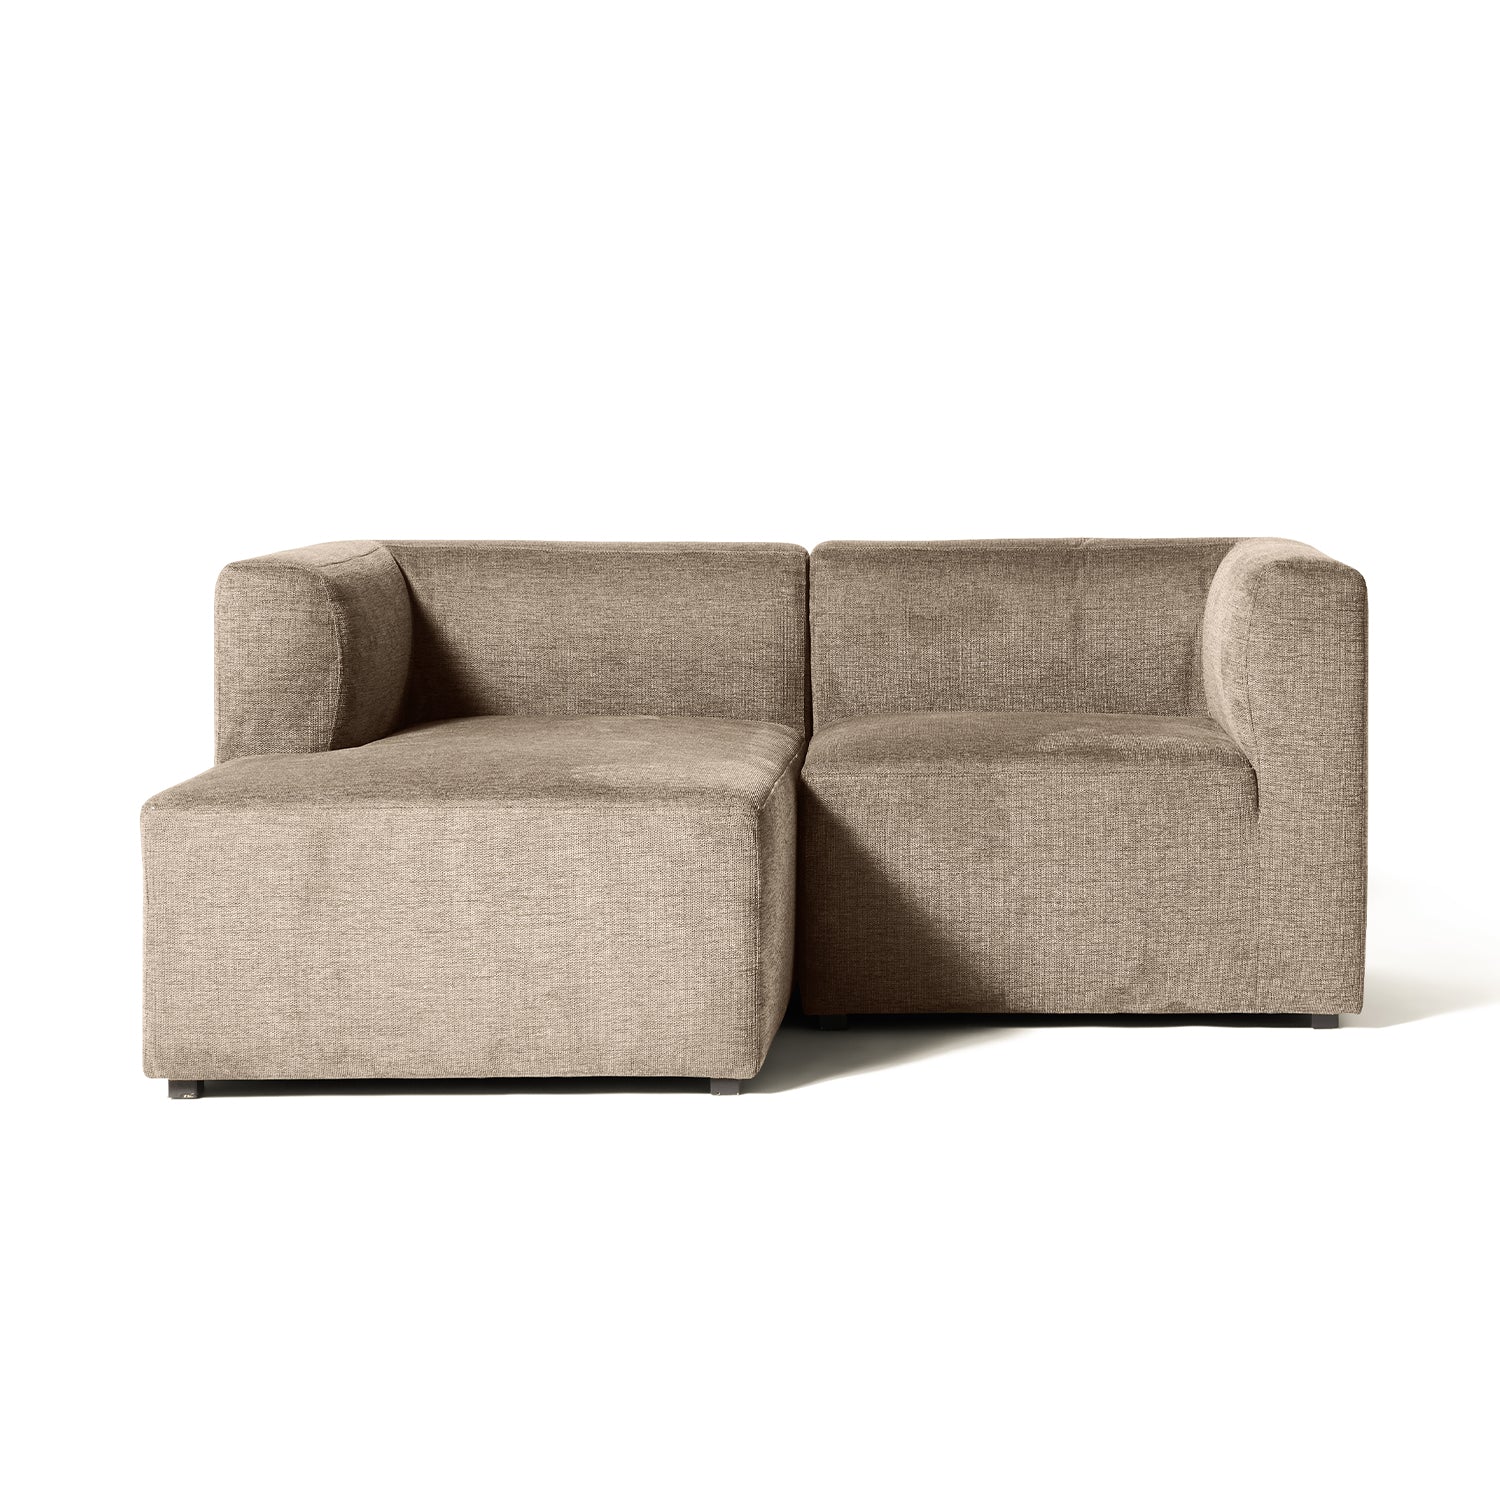 Se Roma lille chaiselong sofa venstrevendt hos Møbelkompagniet.dk